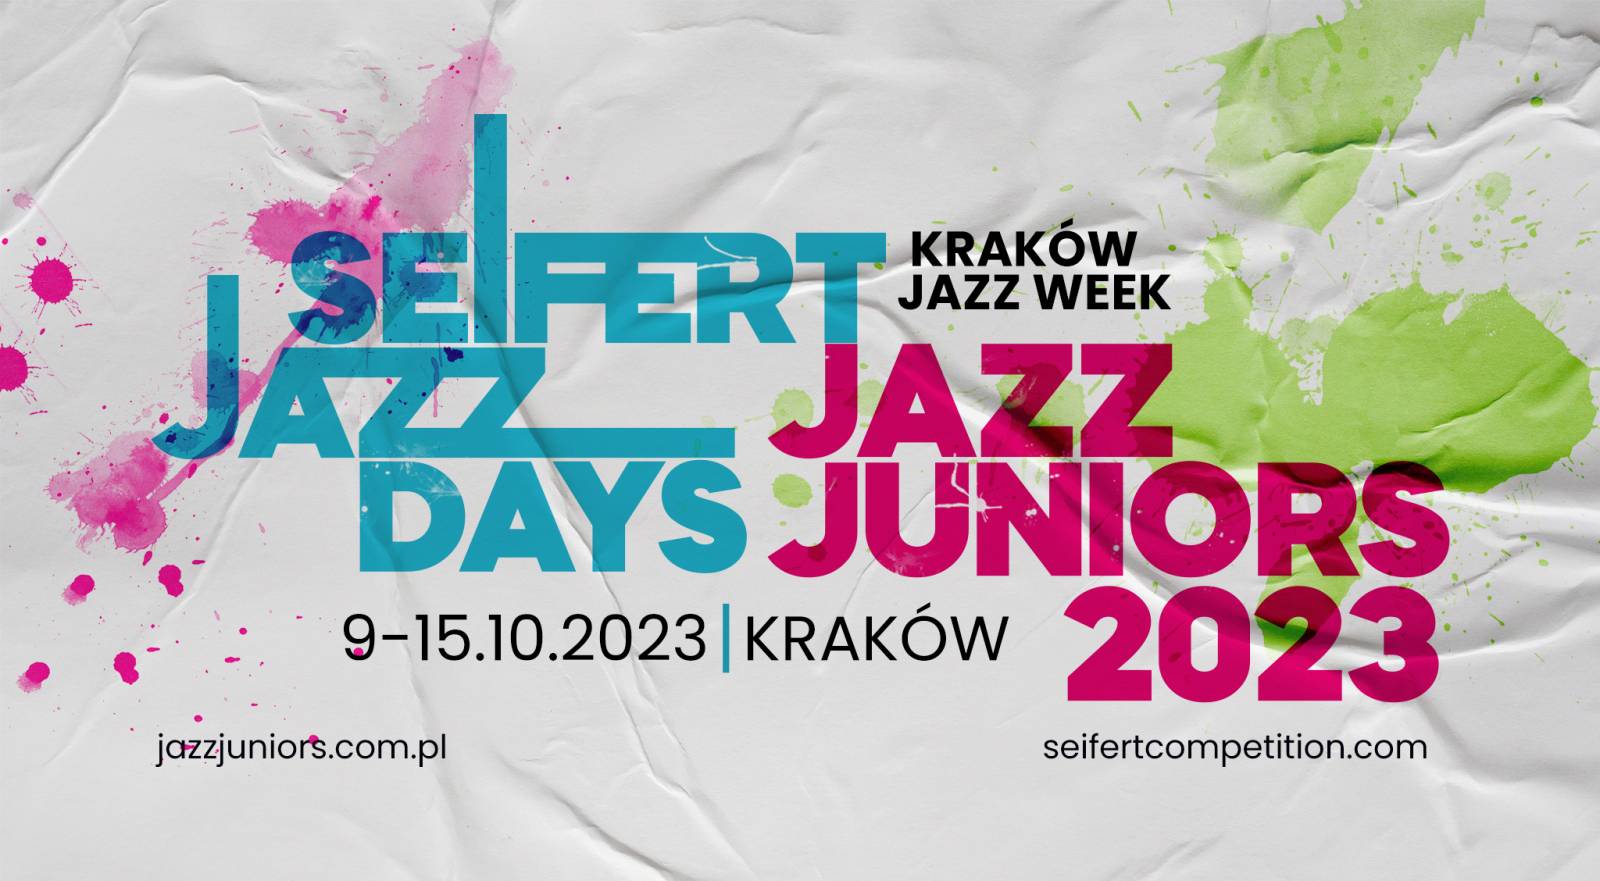 Kraków Jazz Week 2023: Jazz Juniors and Seifert Jazz Days